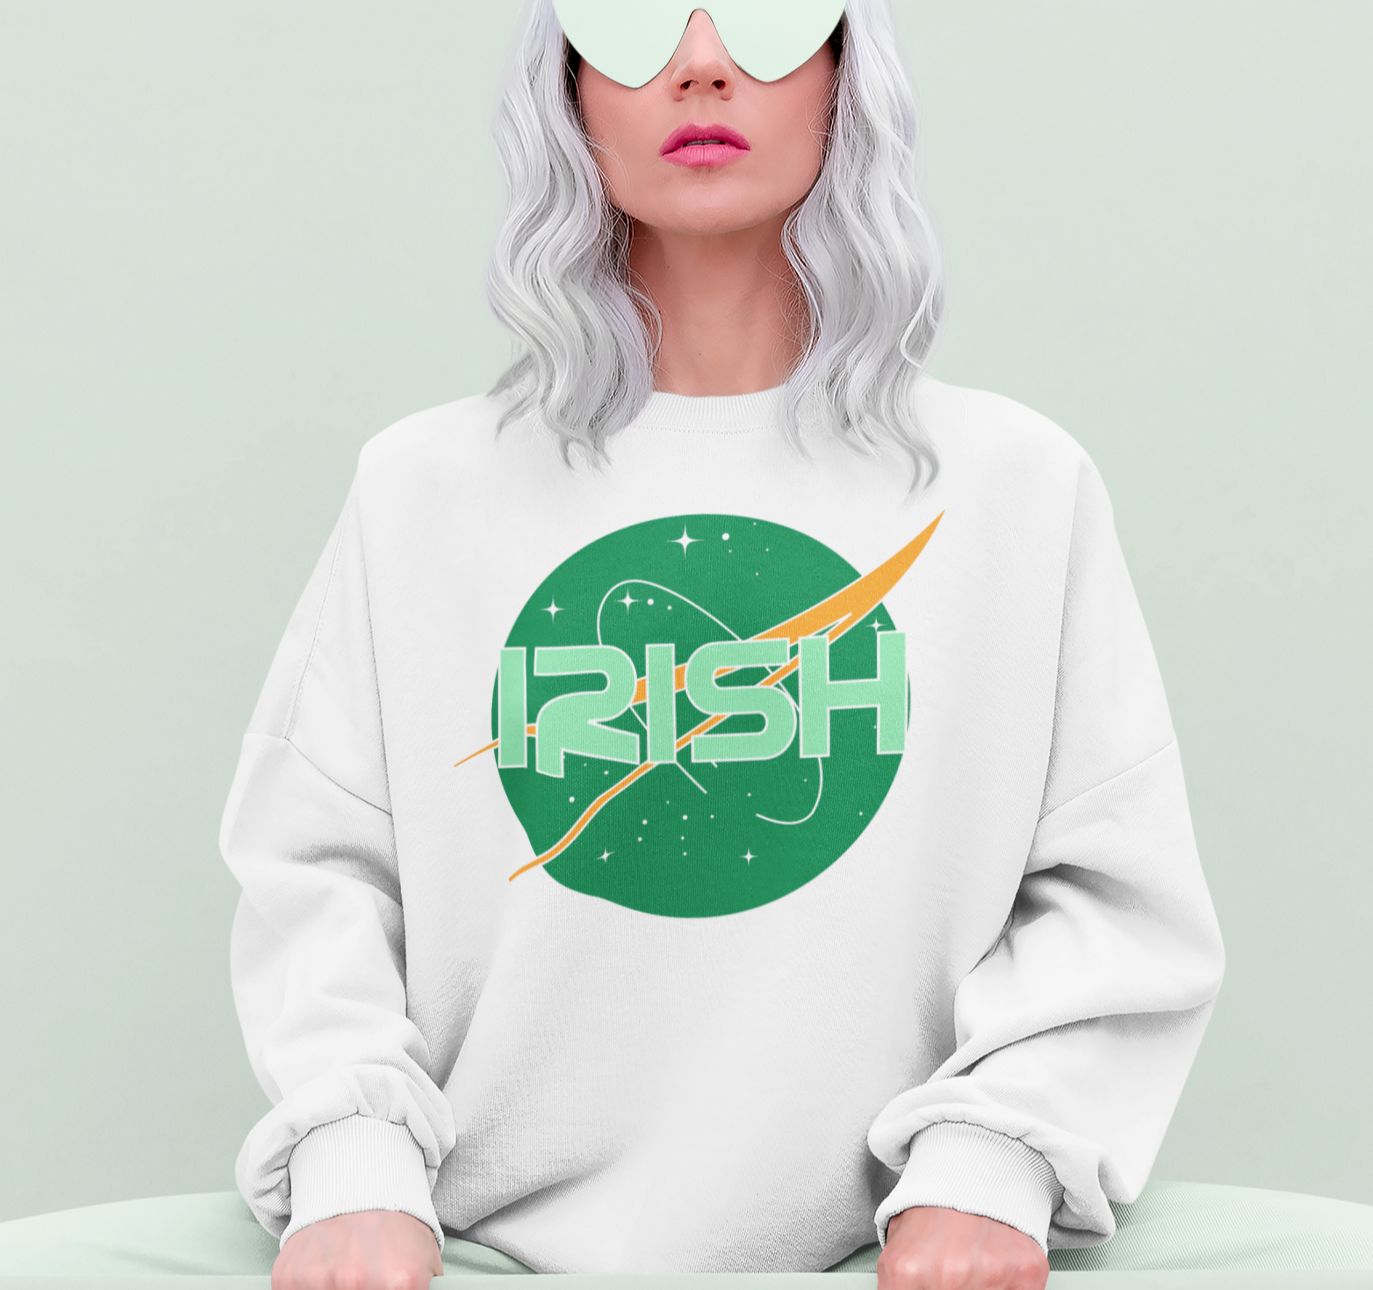 White sweatshirt with the nasa logo saying irish - HighCiti